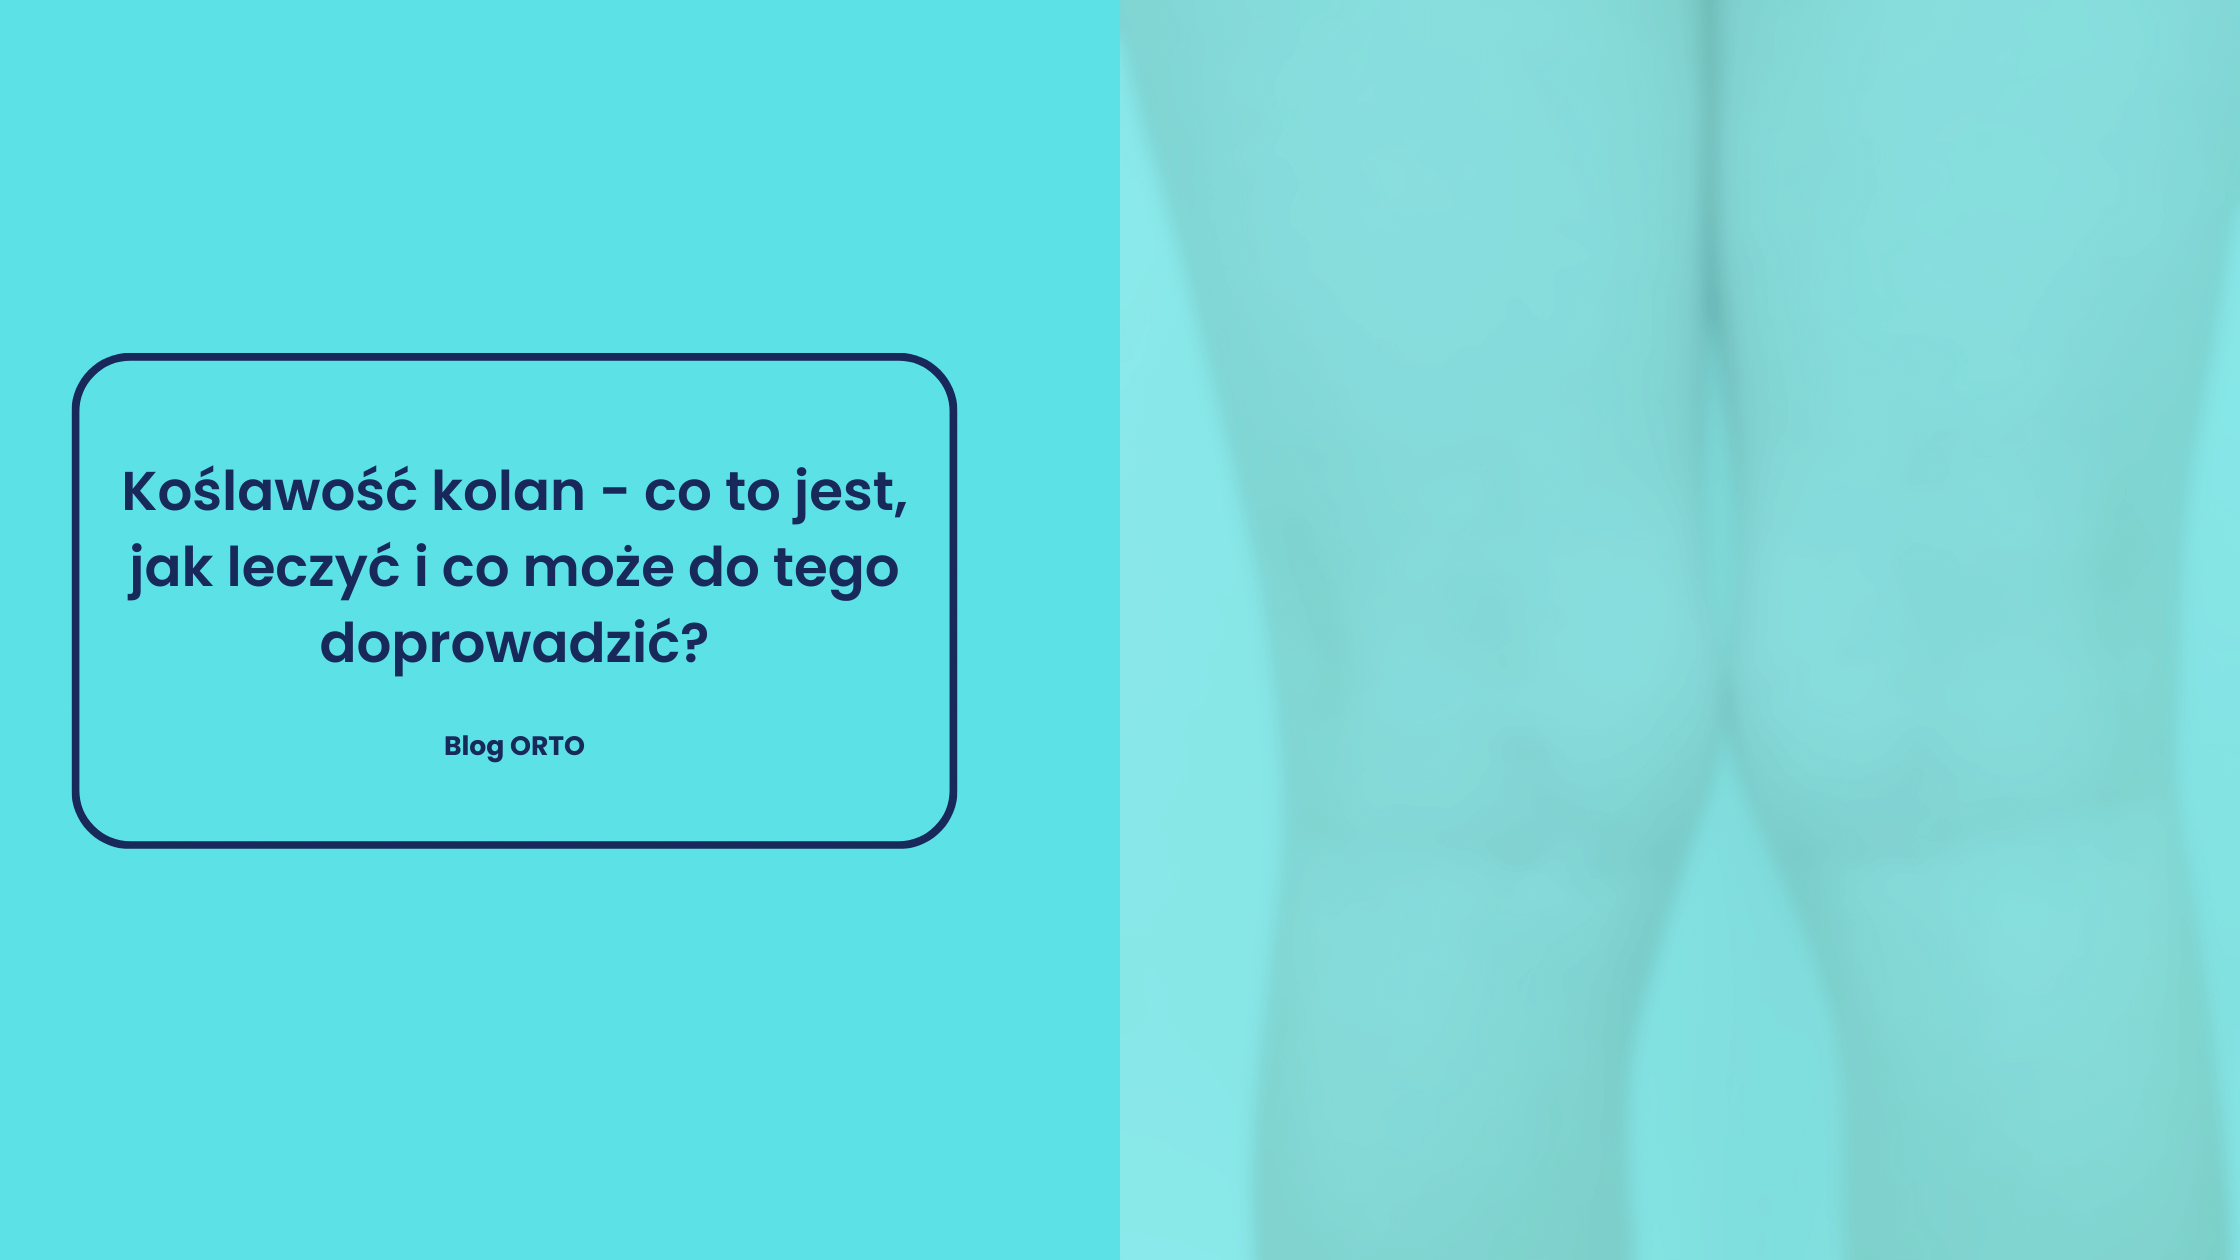 Koślawość kolan - co to jest, jak leczyć i co może do tego doprowadzić? - blog orto.pl